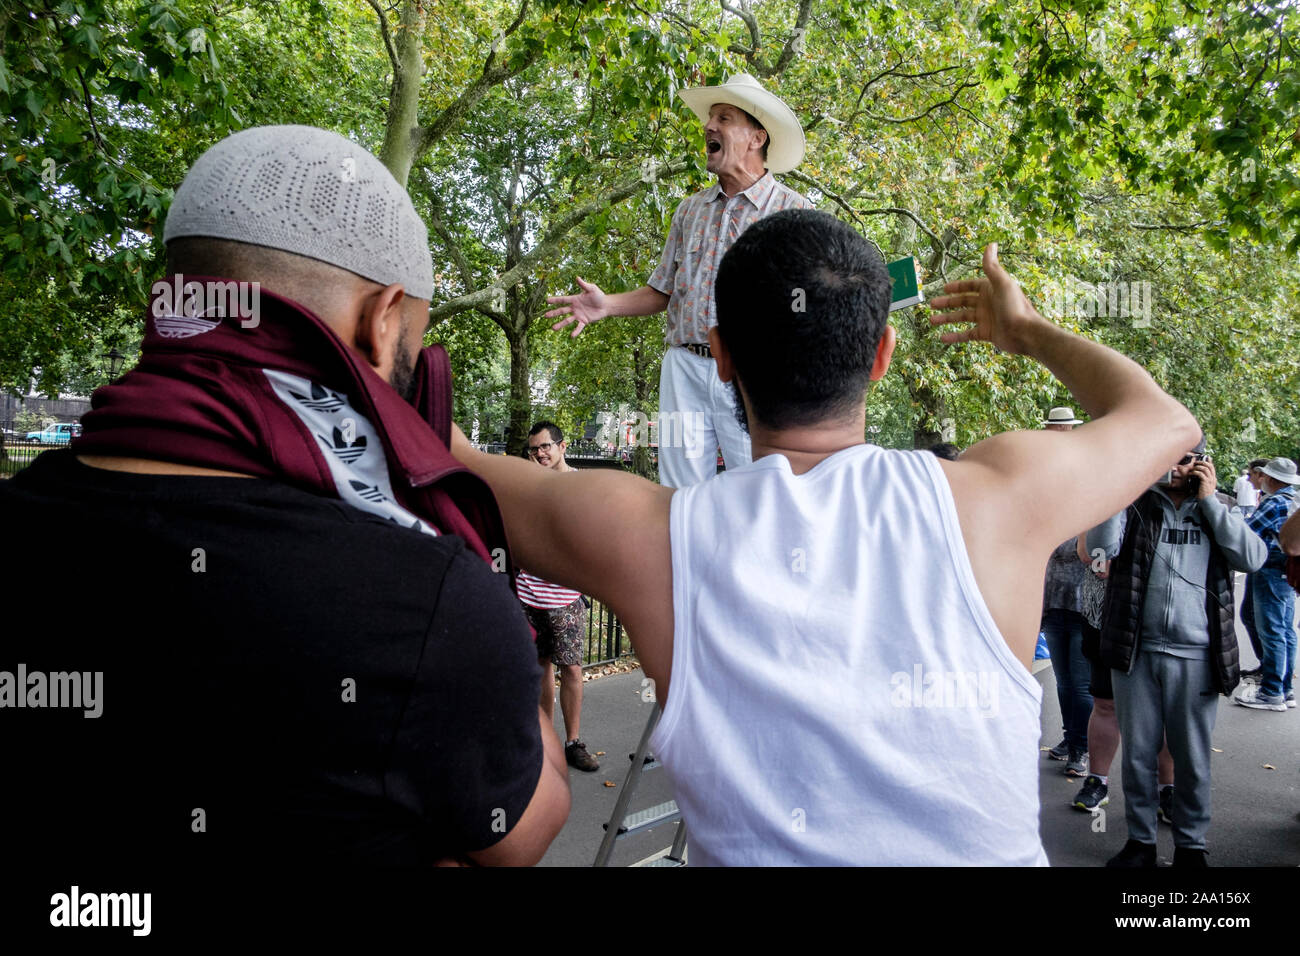 Cuisine américaine, religieux chrétien évangéliste est interrompu par des jeunes musulmans tout en prêchant à Speakers' Corner, Hyde Park, London, UK. Banque D'Images